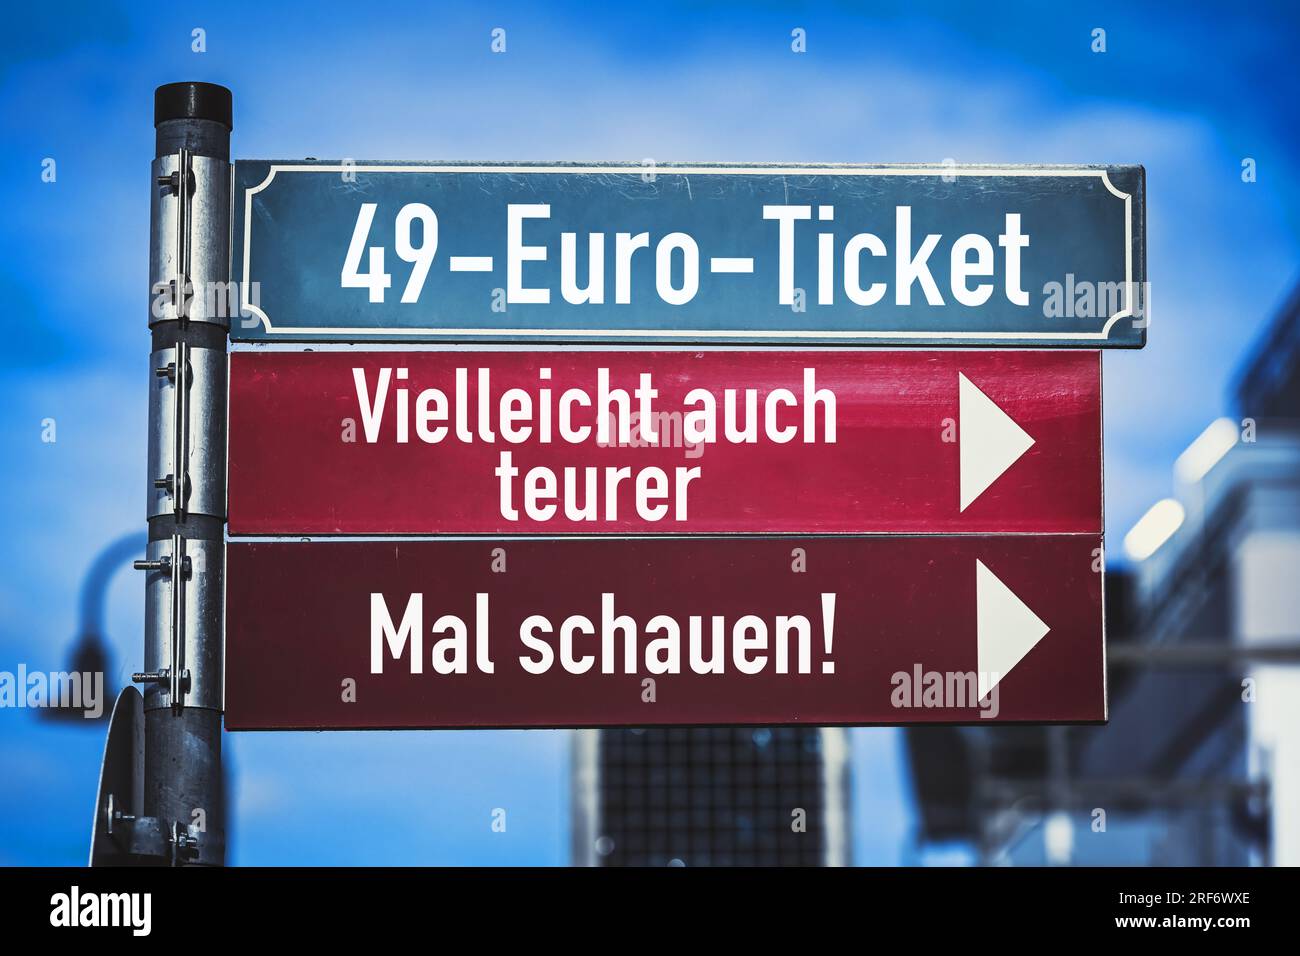 FOTOMONTAGE, Wegweiser mit Aufschrift 49-Euro-Ticket, Vielleicht auch teurer und Mal schauen, Symbolfoto Kosten für das D-Ticket Stock Photo